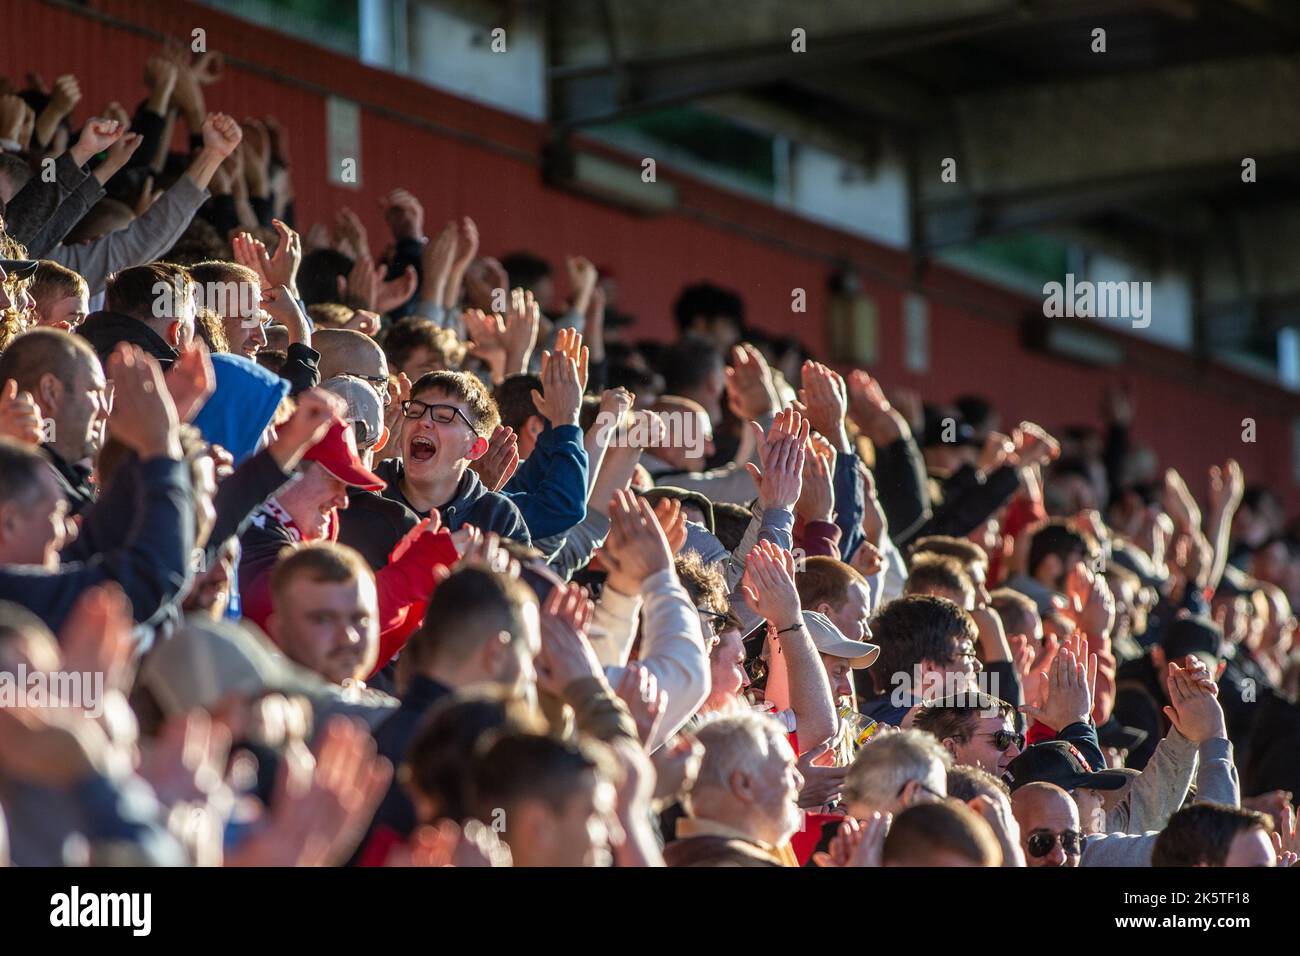 Fußball-/Fußballfans und Zuschauer auf der Stehterrasse im Stadion applaudieren und klatschen während des Spiels. Stockfoto